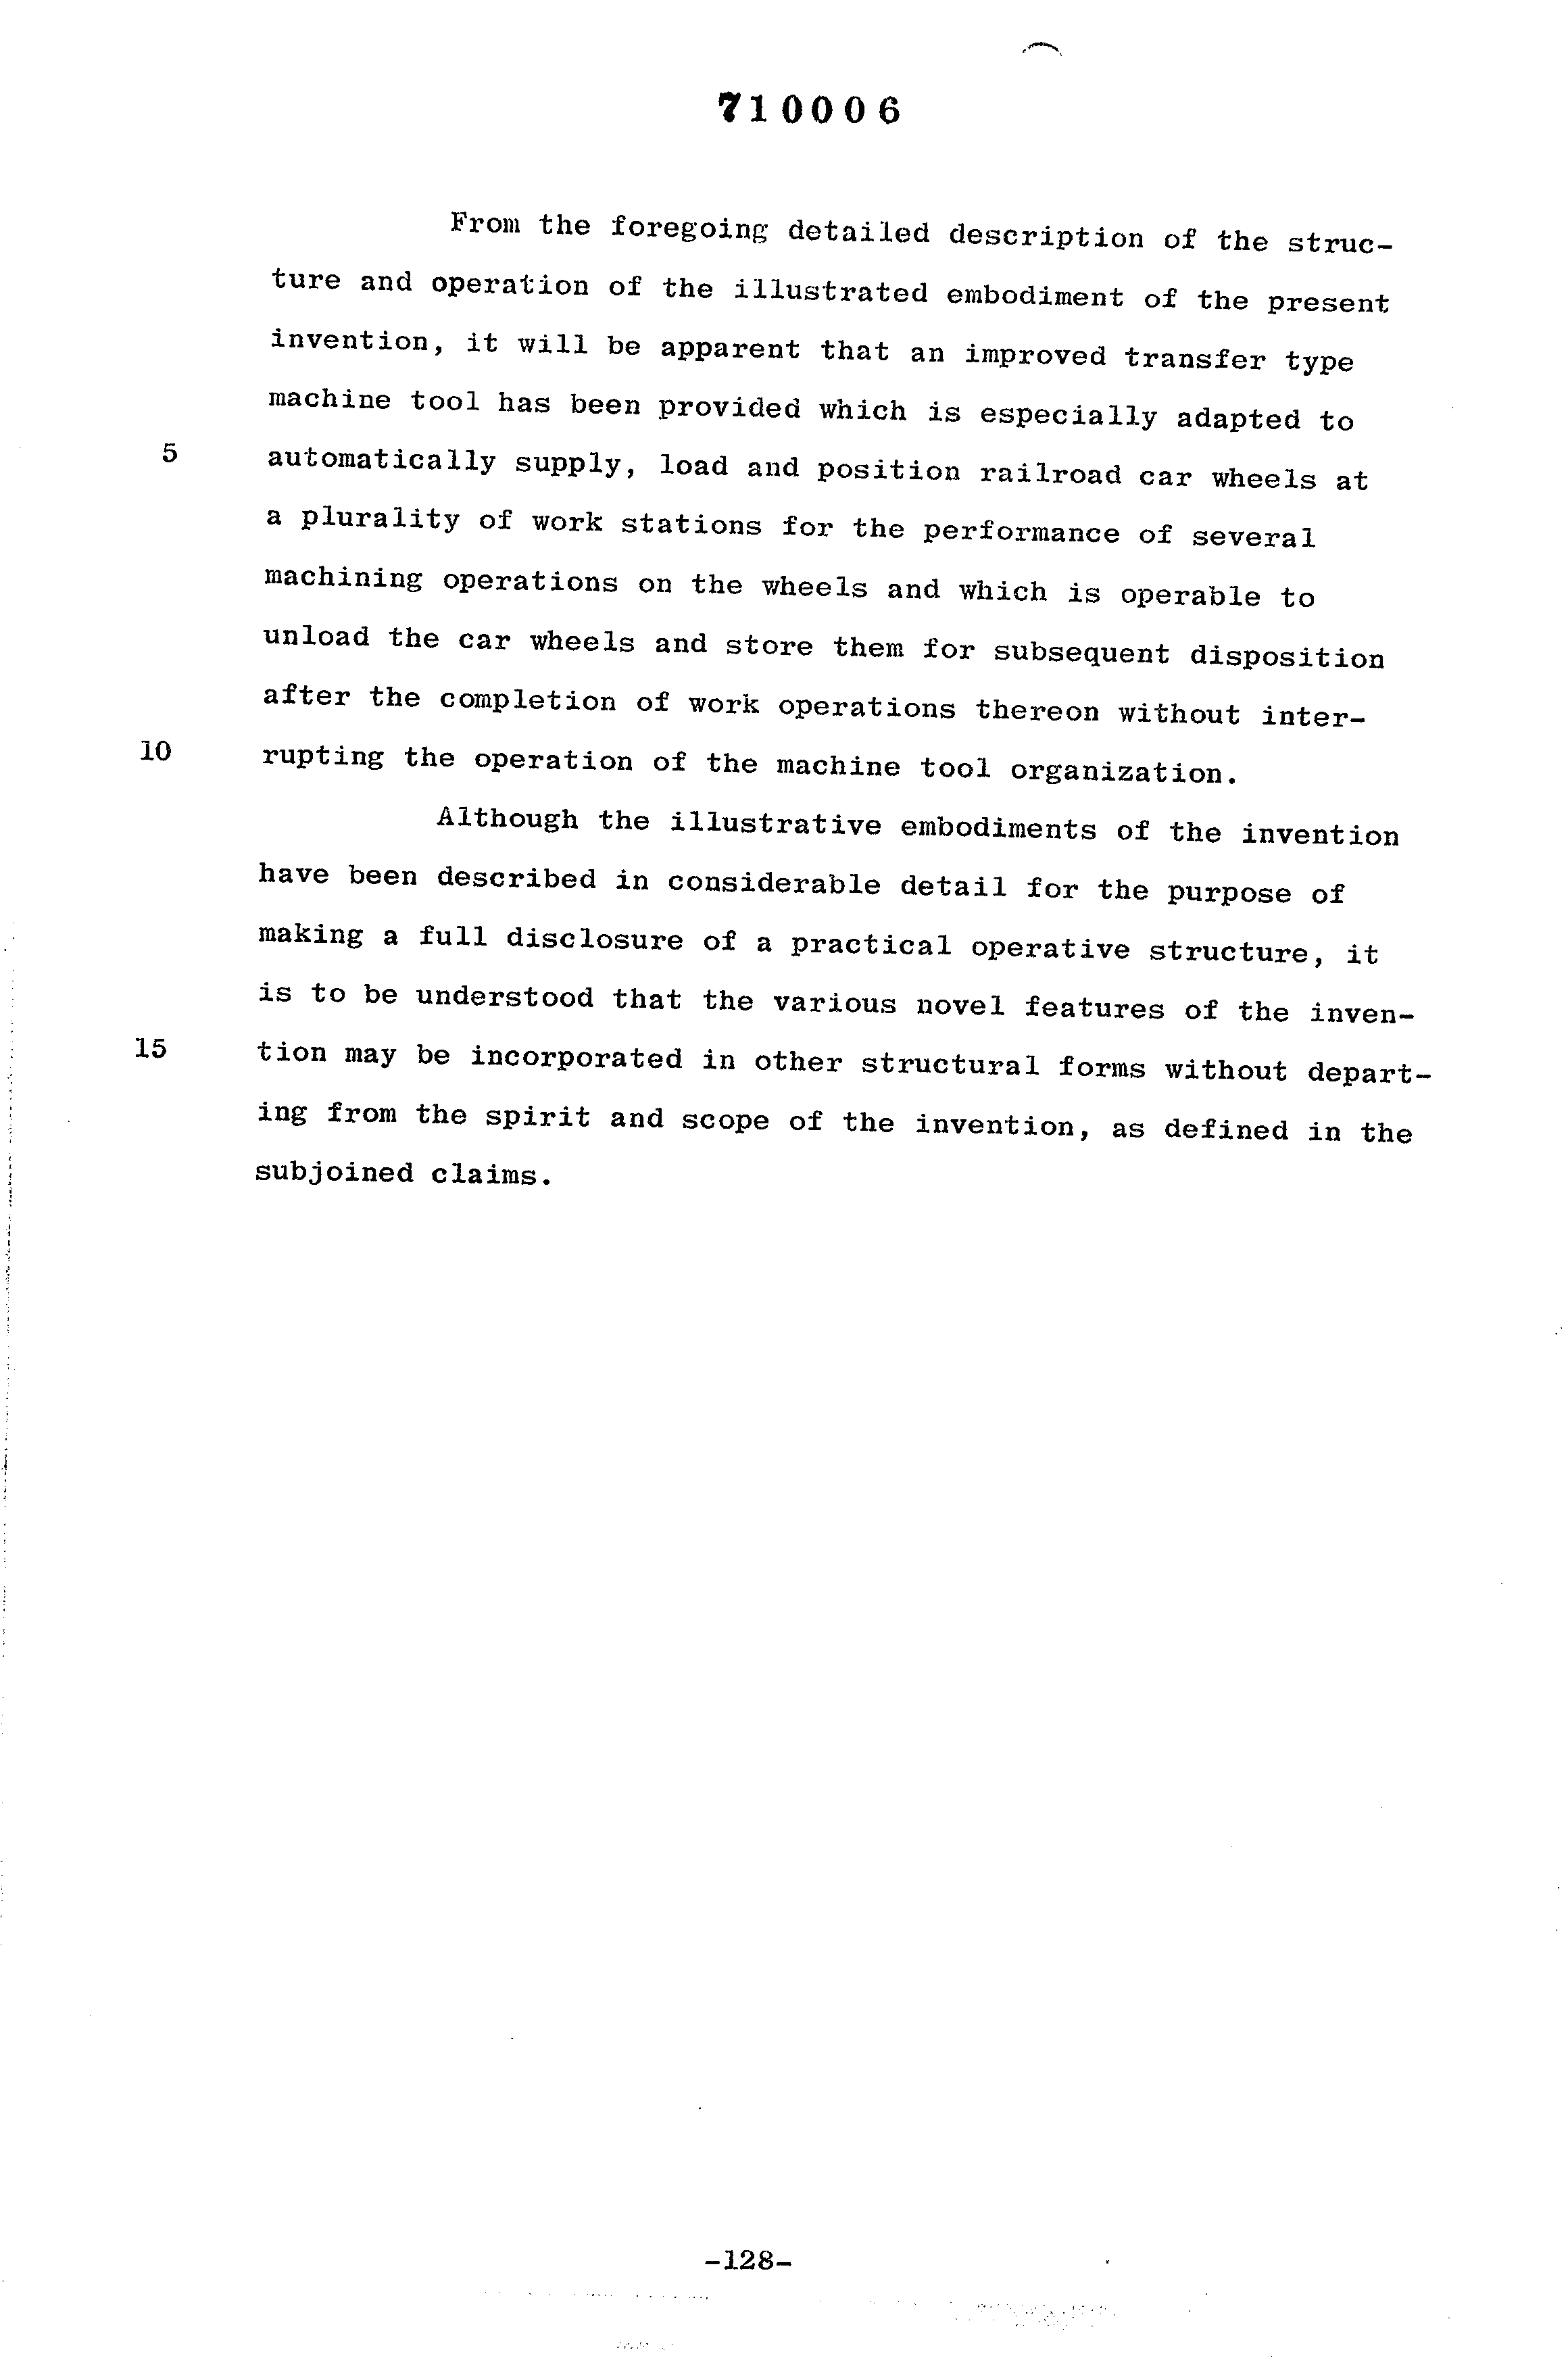 Canadian Patent Document 710006. Description 19931220. Image 128 of 128